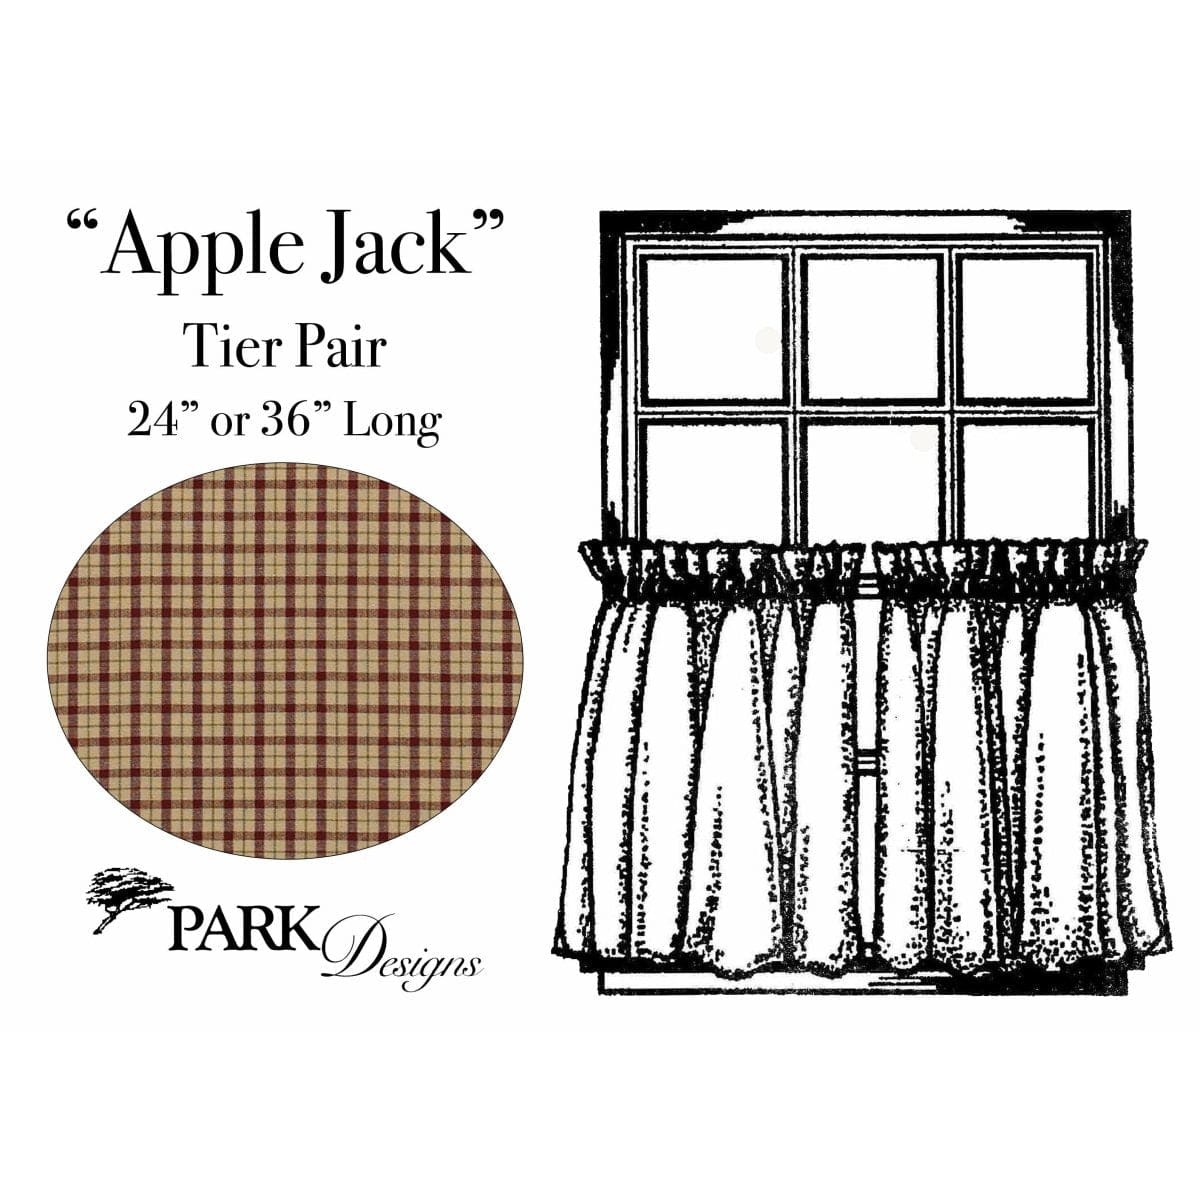 Apple Jack Tier Pair 24" Long Unlined-Park Designs-The Village Merchant